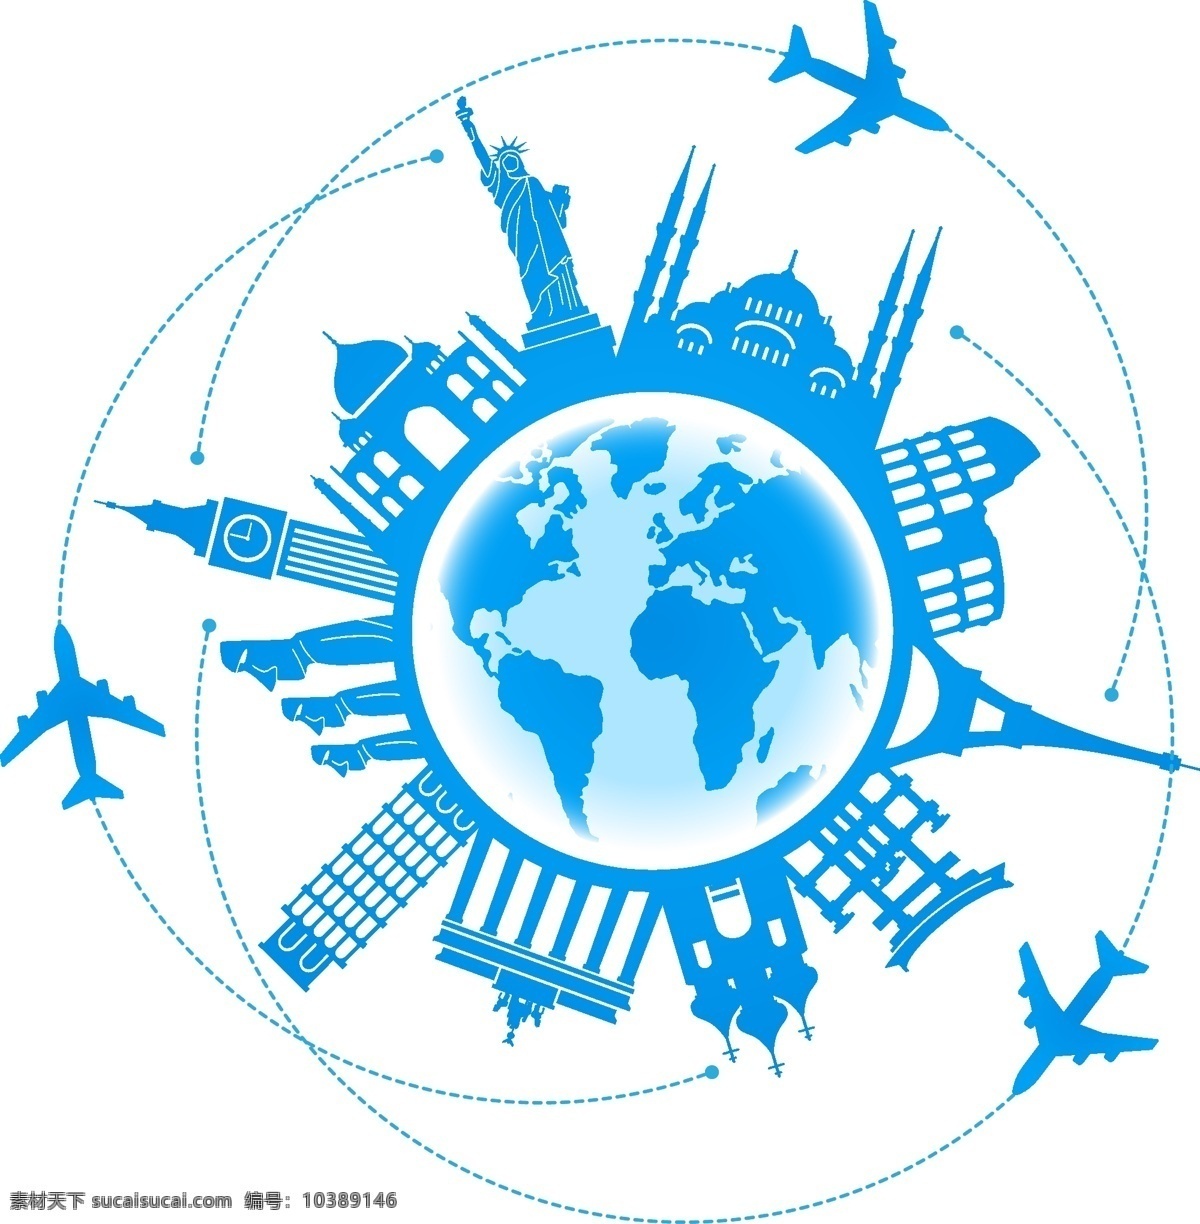 世界旅游设计 旅游 旅游广告 世界旅游 世界游 环球游 出国游 旅游图标 旅游标志 国际游 旅游设计